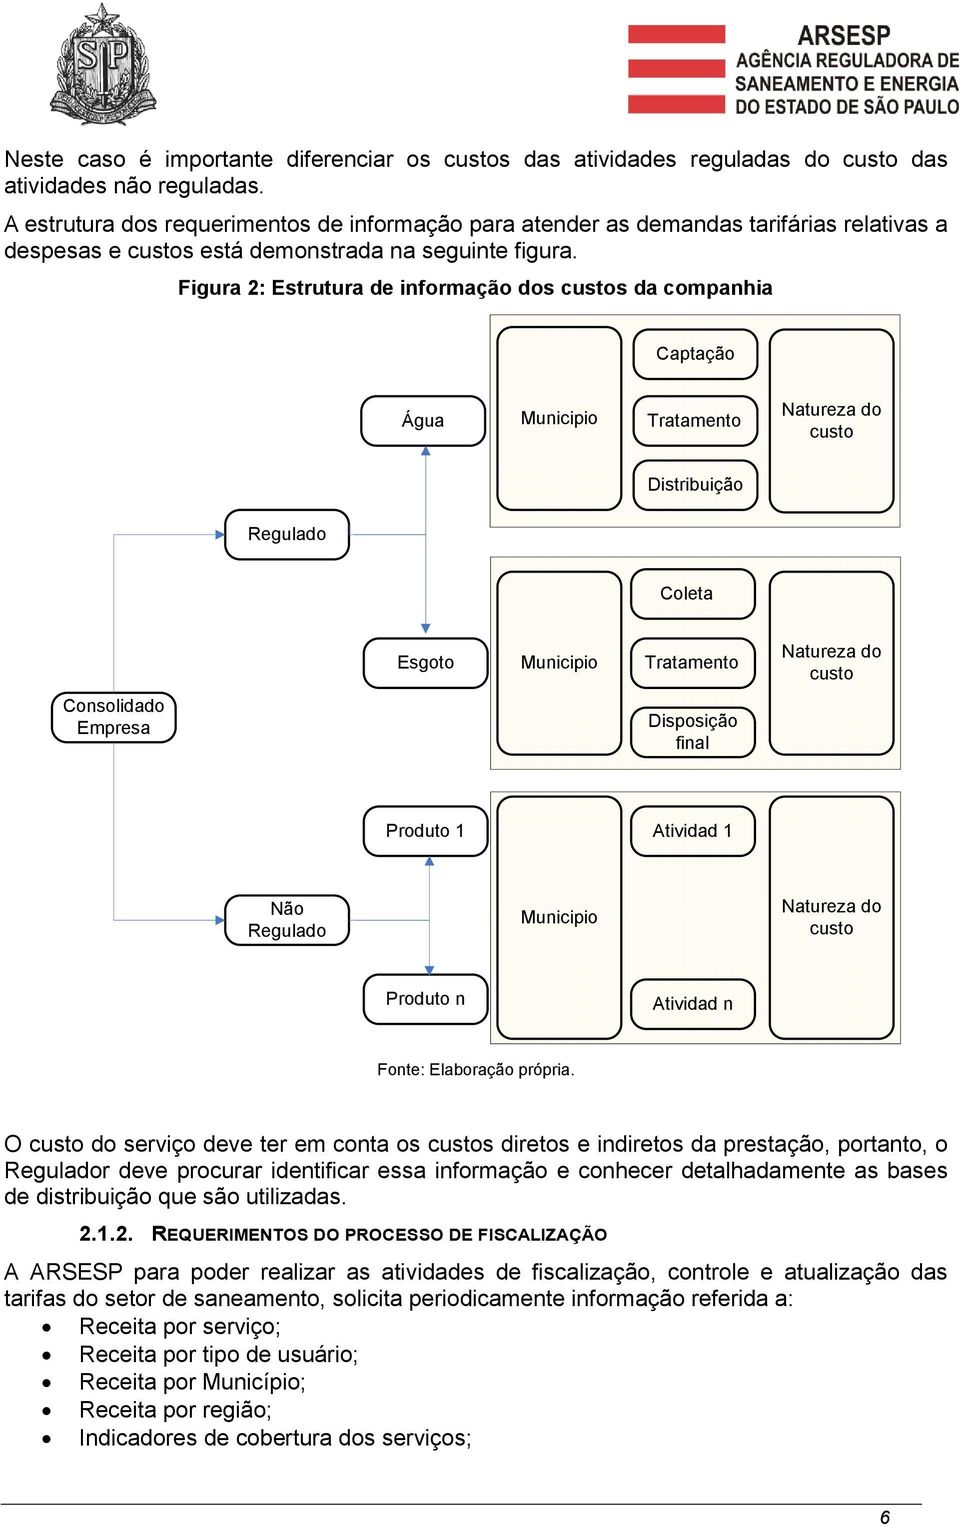 Figura 2: Estrutura de informação dos custos da companhia Captação Água Municipio Tratamento Natureza do custo Distribuição Regulado Coleta Esgoto Municipio Tratamento Natureza do custo Consolidado